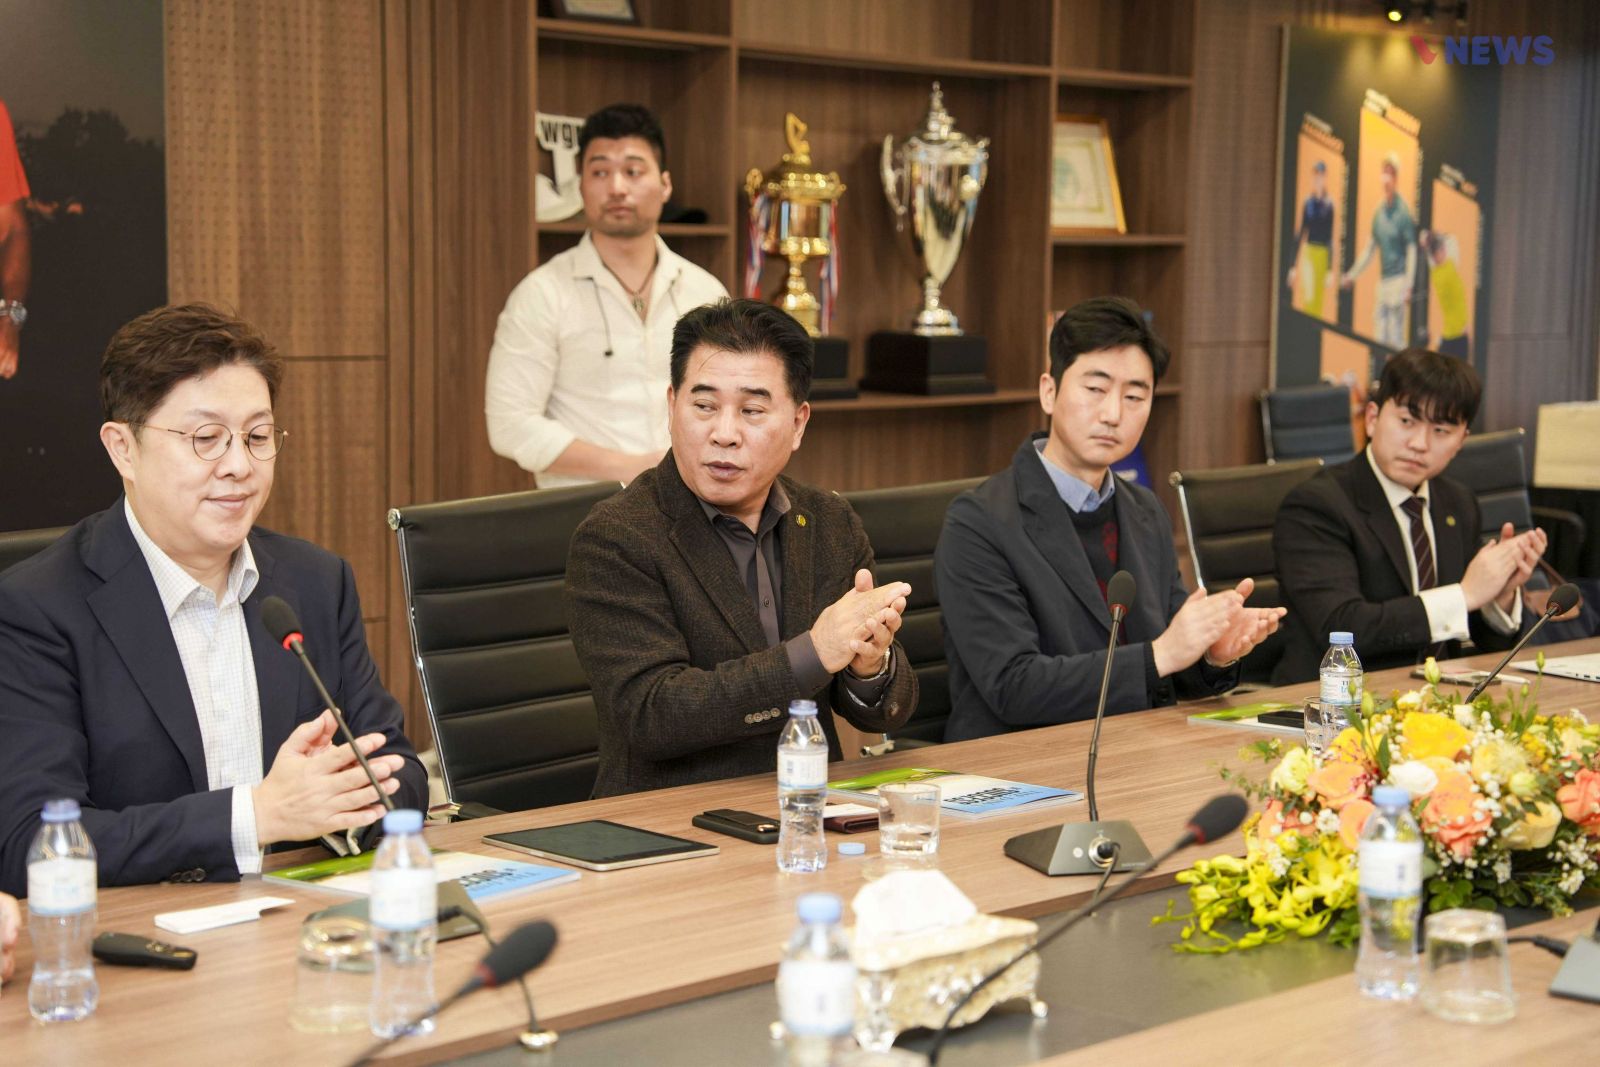 VGolf Travel ký kết hợp tác chiến lược với Tập đoàn Han K Golf - Bước tiến mới quan trọng